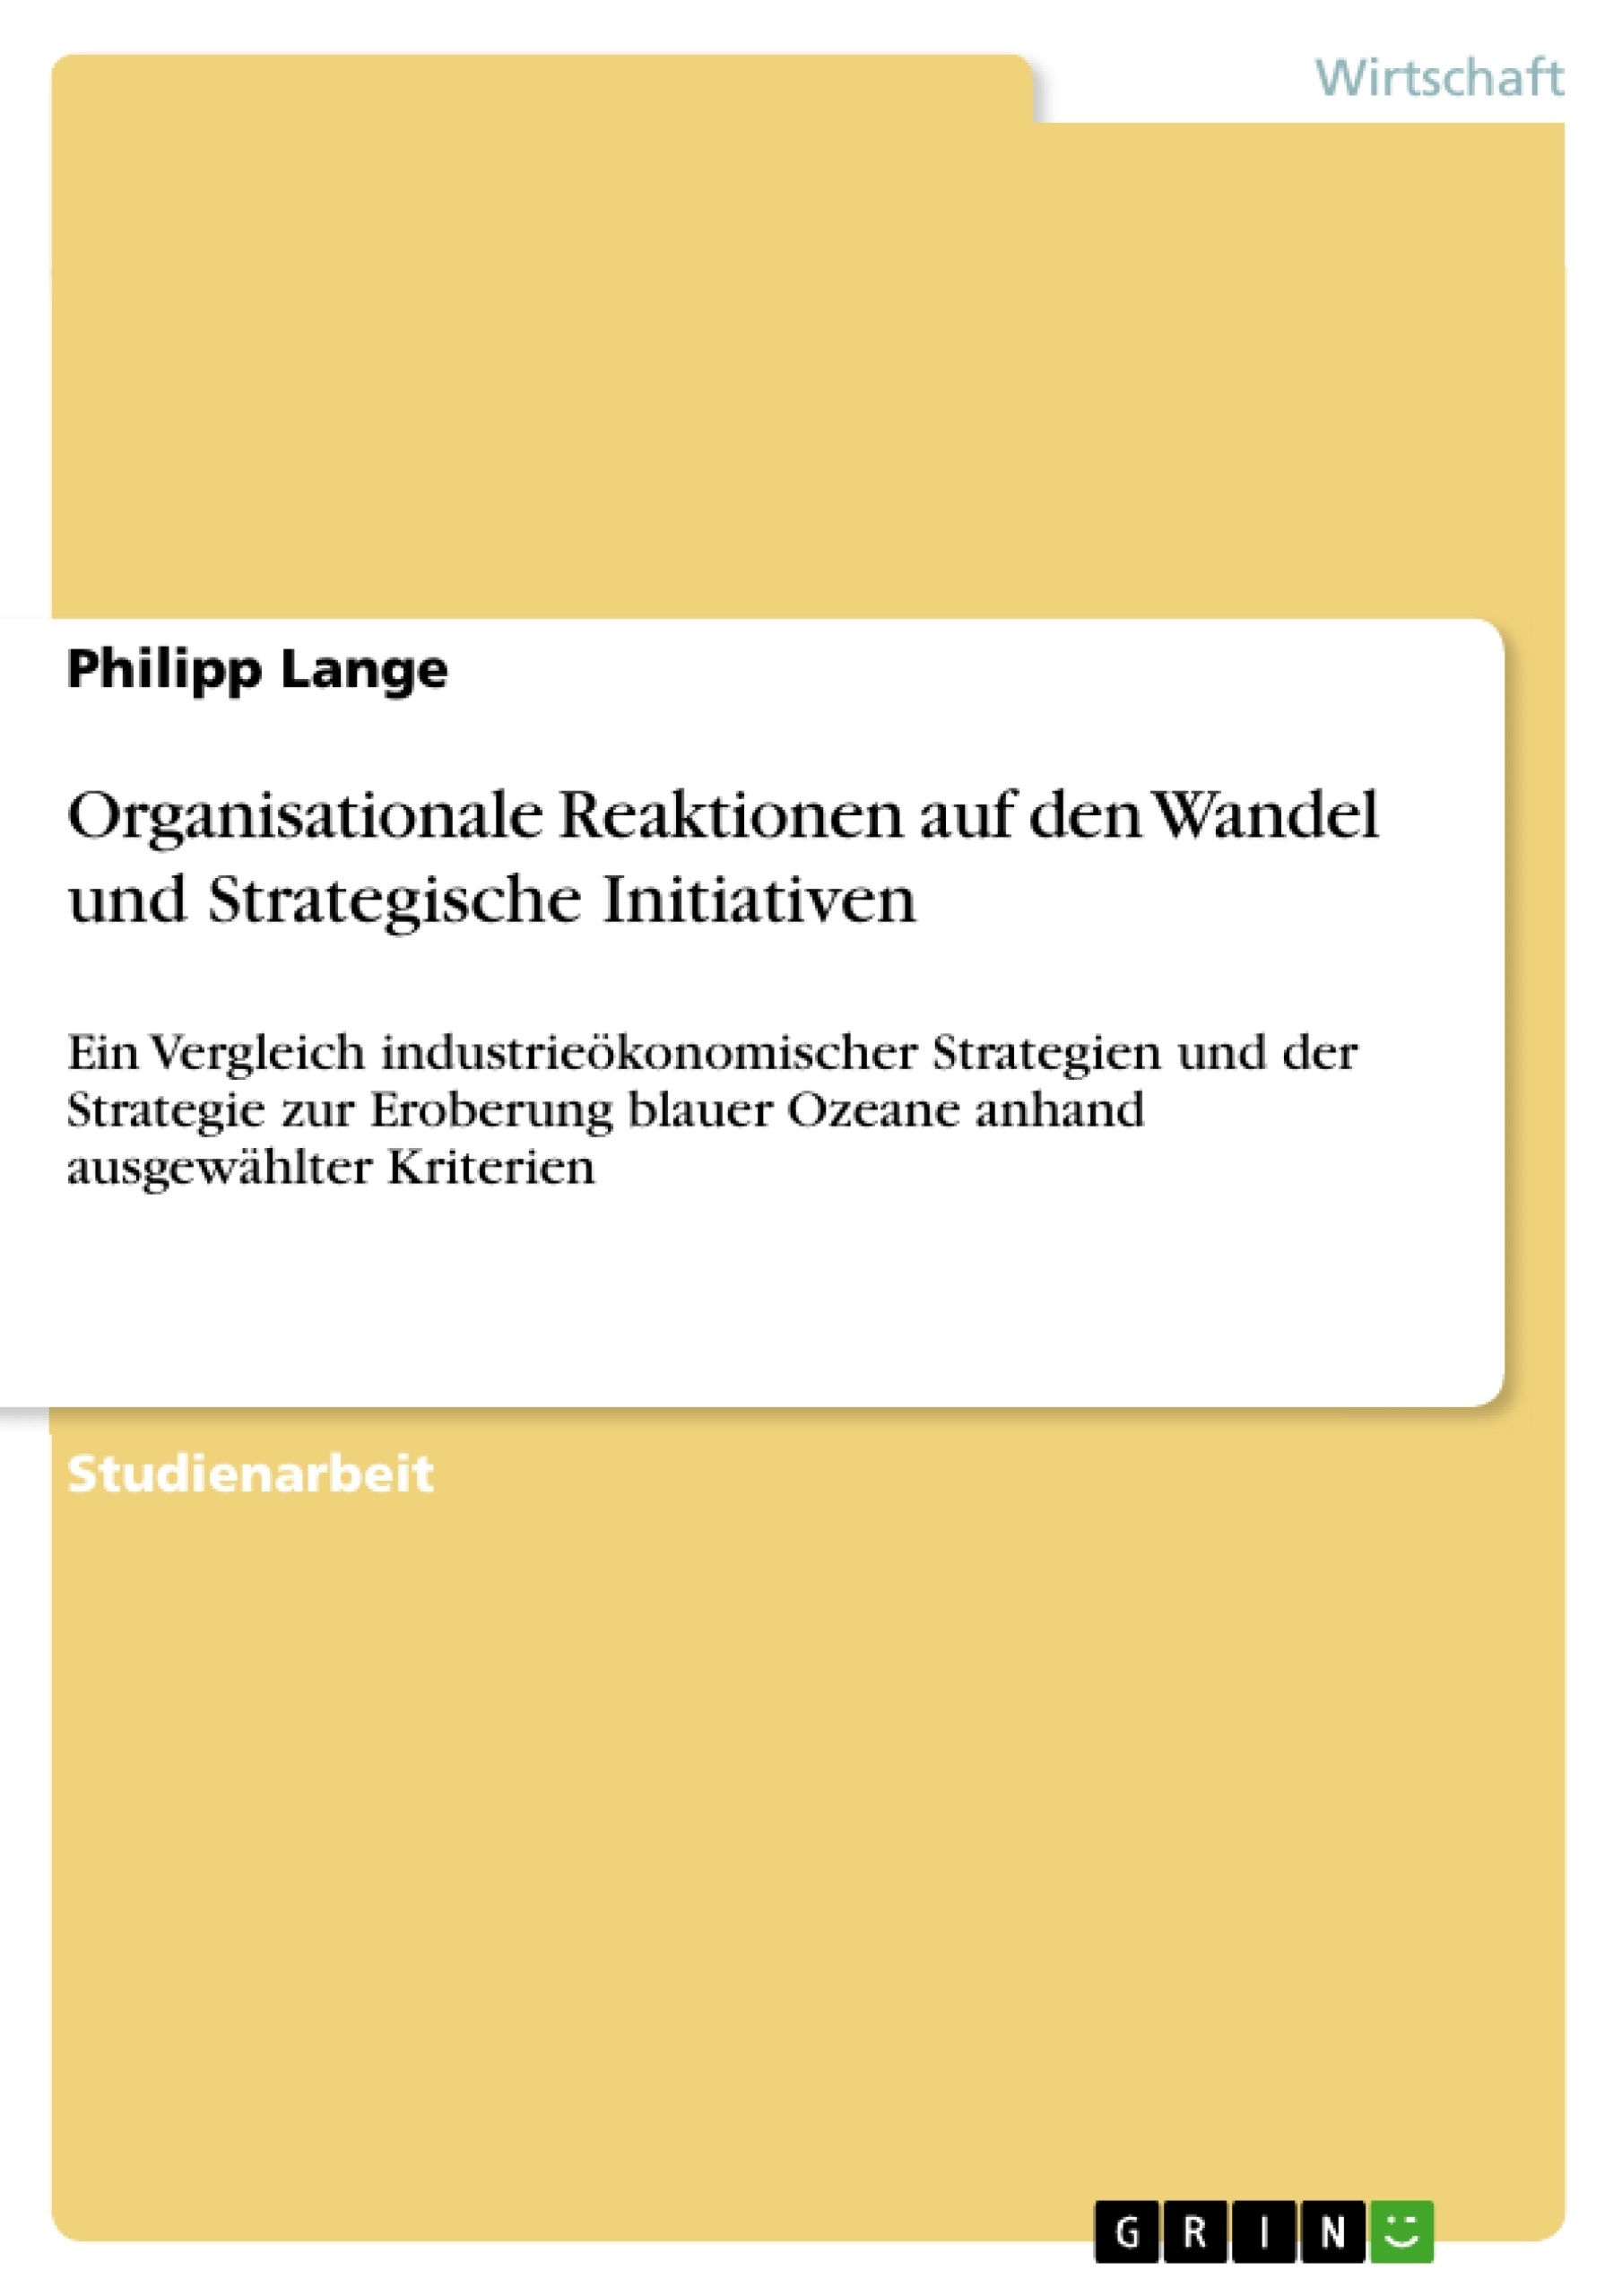 Titre: Organisationale Reaktionen auf den Wandel und Strategische Initiativen